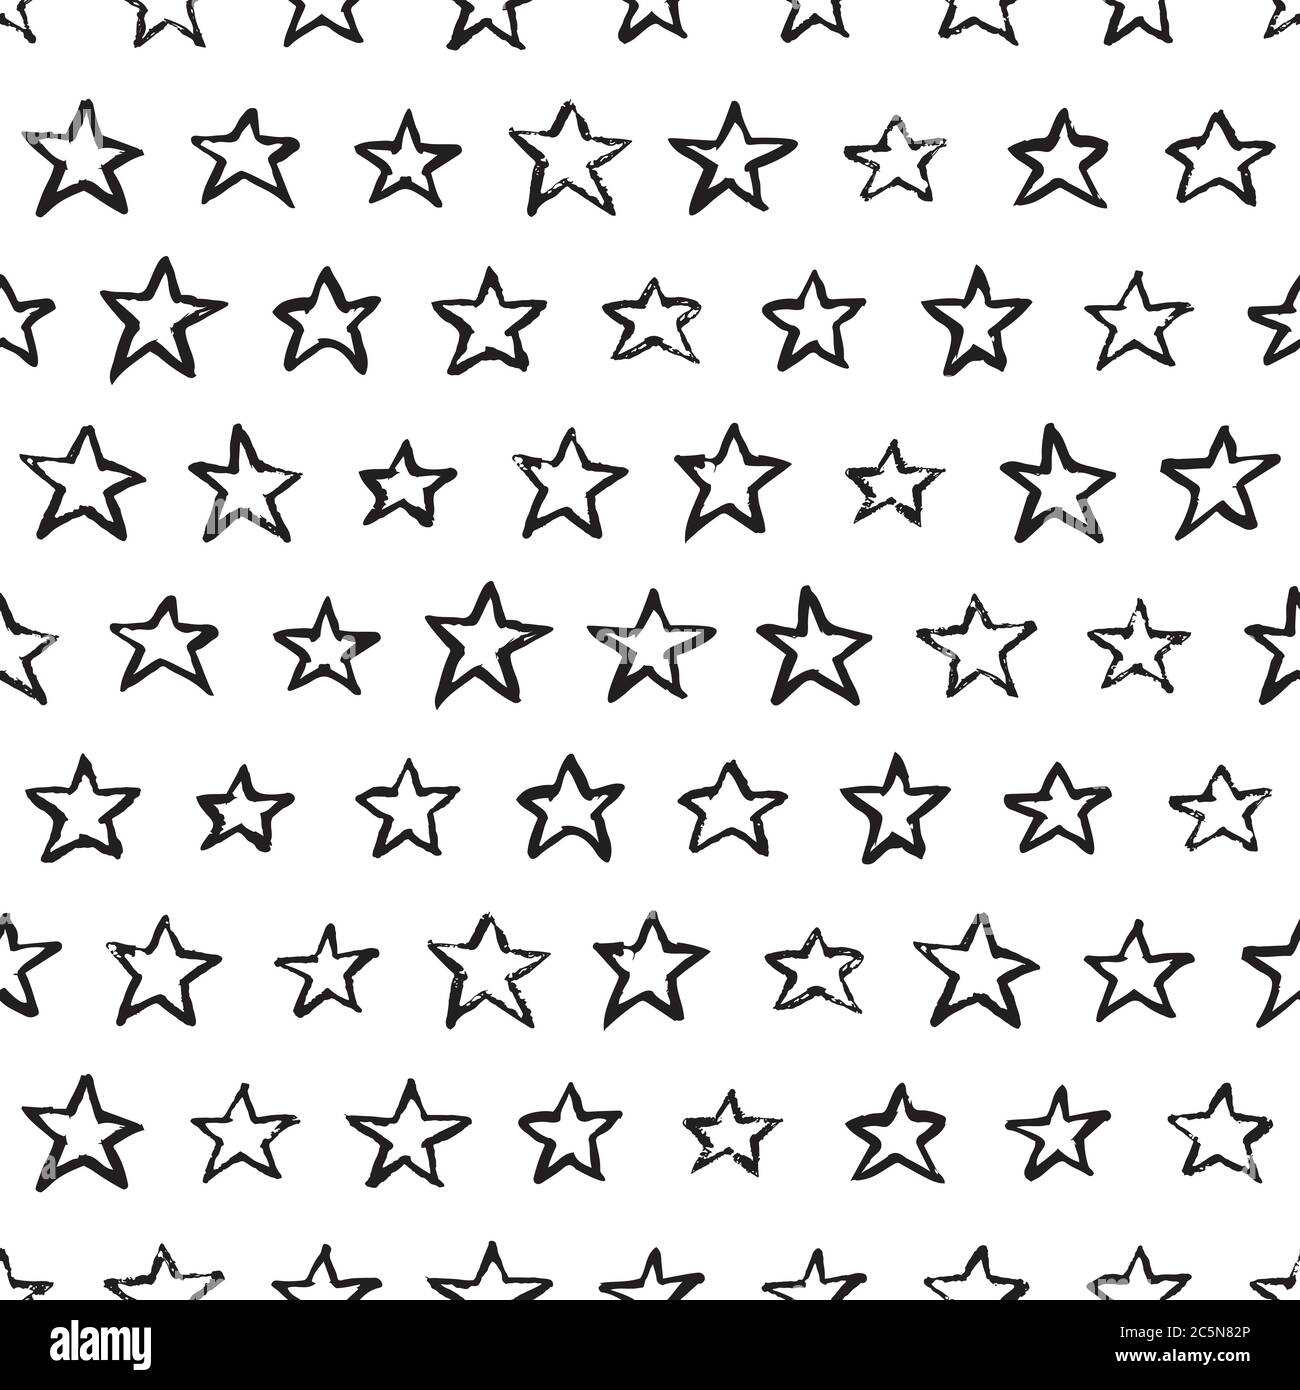 Abstrakt Aquarell Sterne Vektor nahtlose Muster. Trendy Mode-Textildruck in schwarz-weißen Farben. Art geometrische Tinte Textur Hintergrund. Handzeichnen Stock Vektor